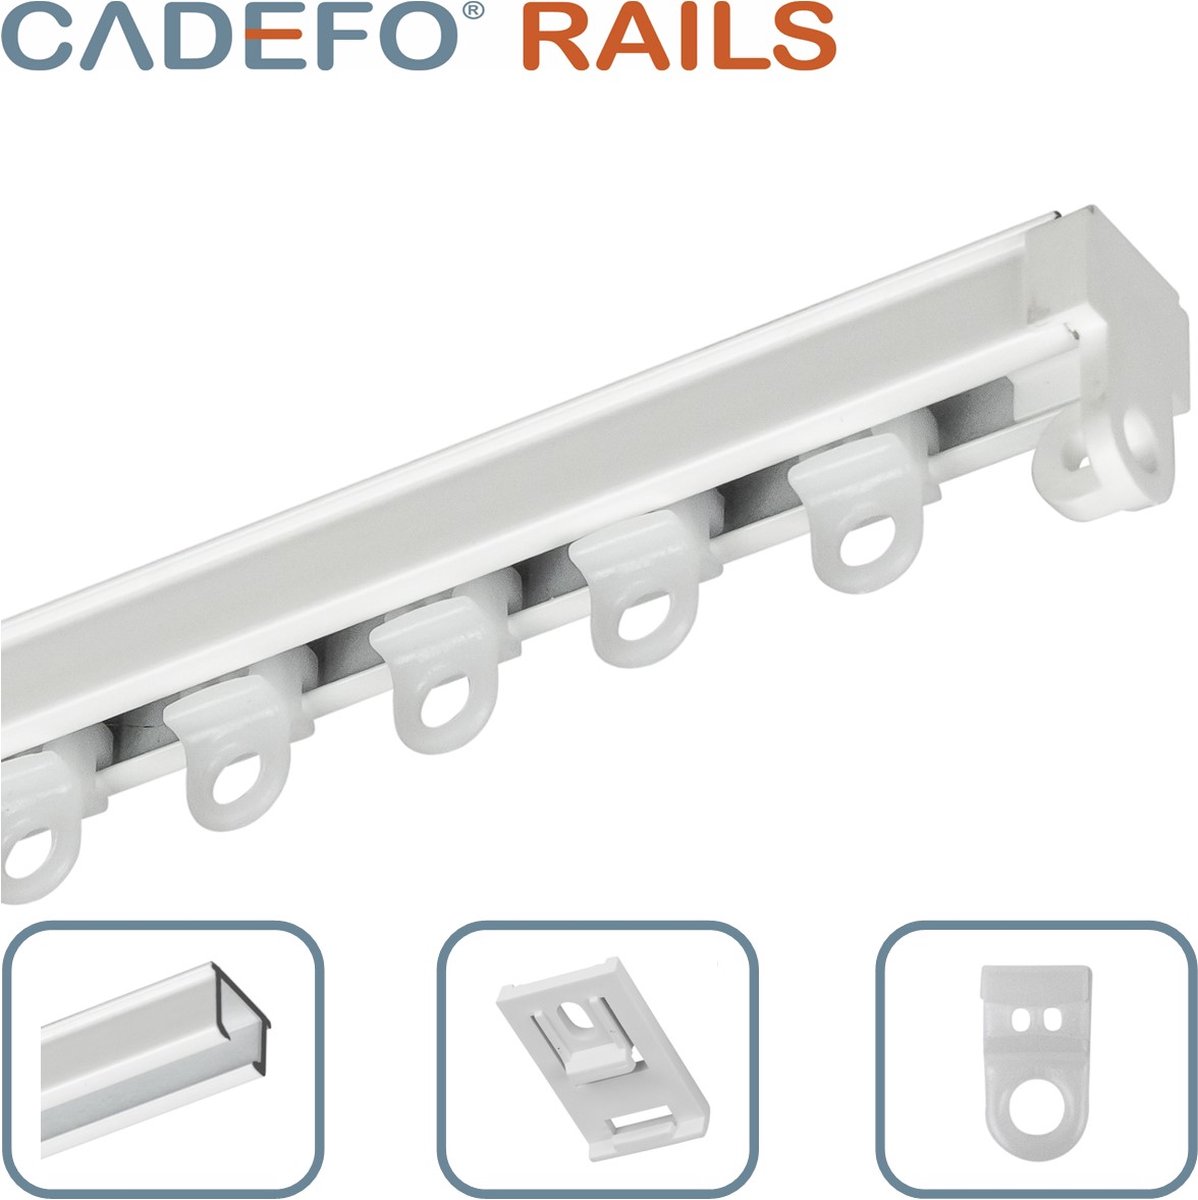 CADEFO RAILS (201 - 250 cm) Gordijnrails - Compleet op maat! - UIT 1 STUK - Leverbaar tot 6 meter - Plafondbevestiging - Lengte 210 cm